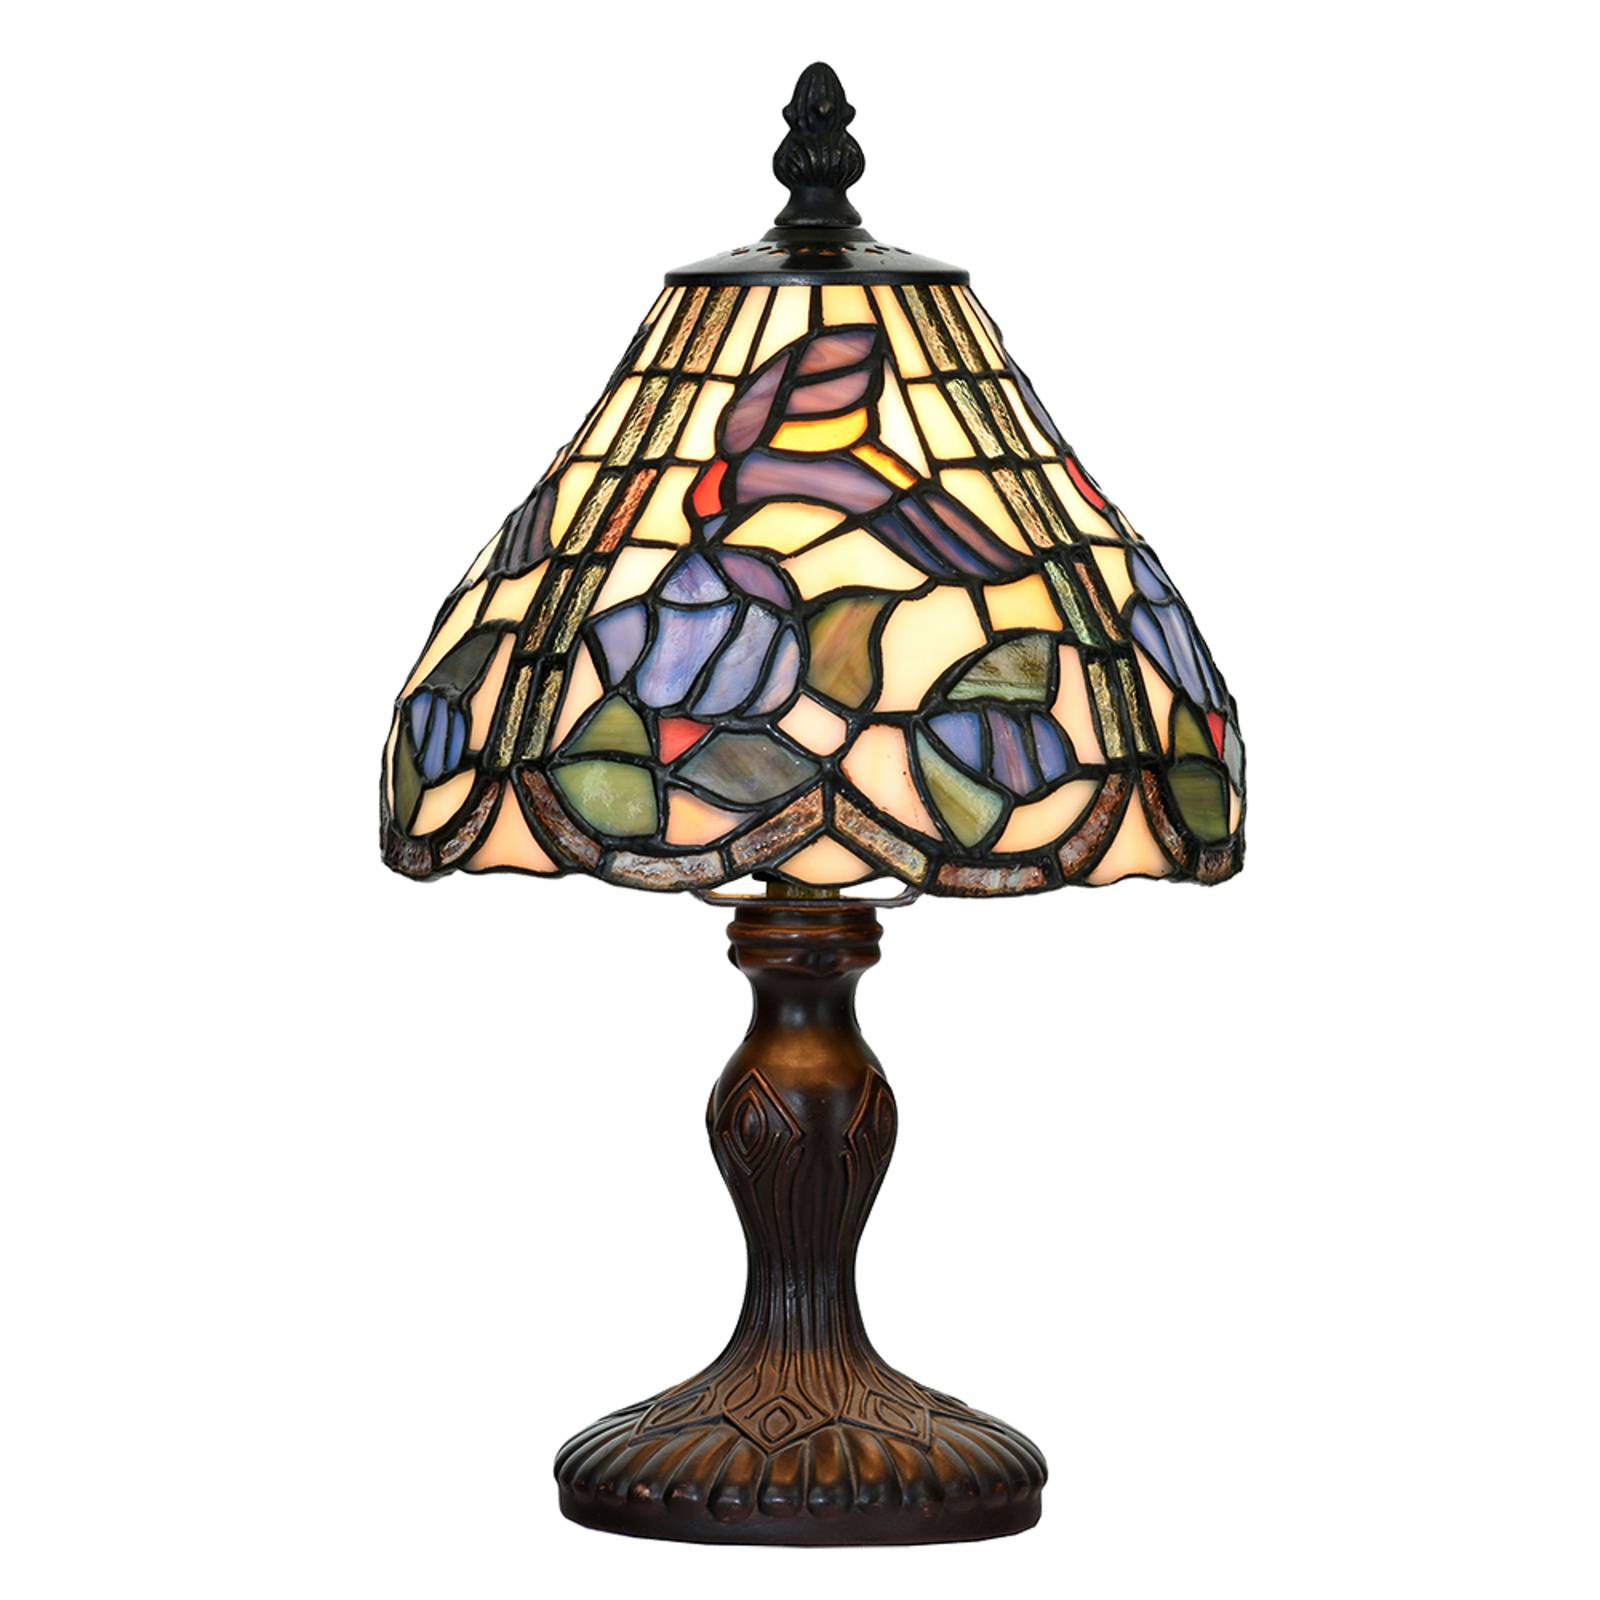 Asztali lámpa 5LL-6181 Tiffany stílusban, Ø 18 cm